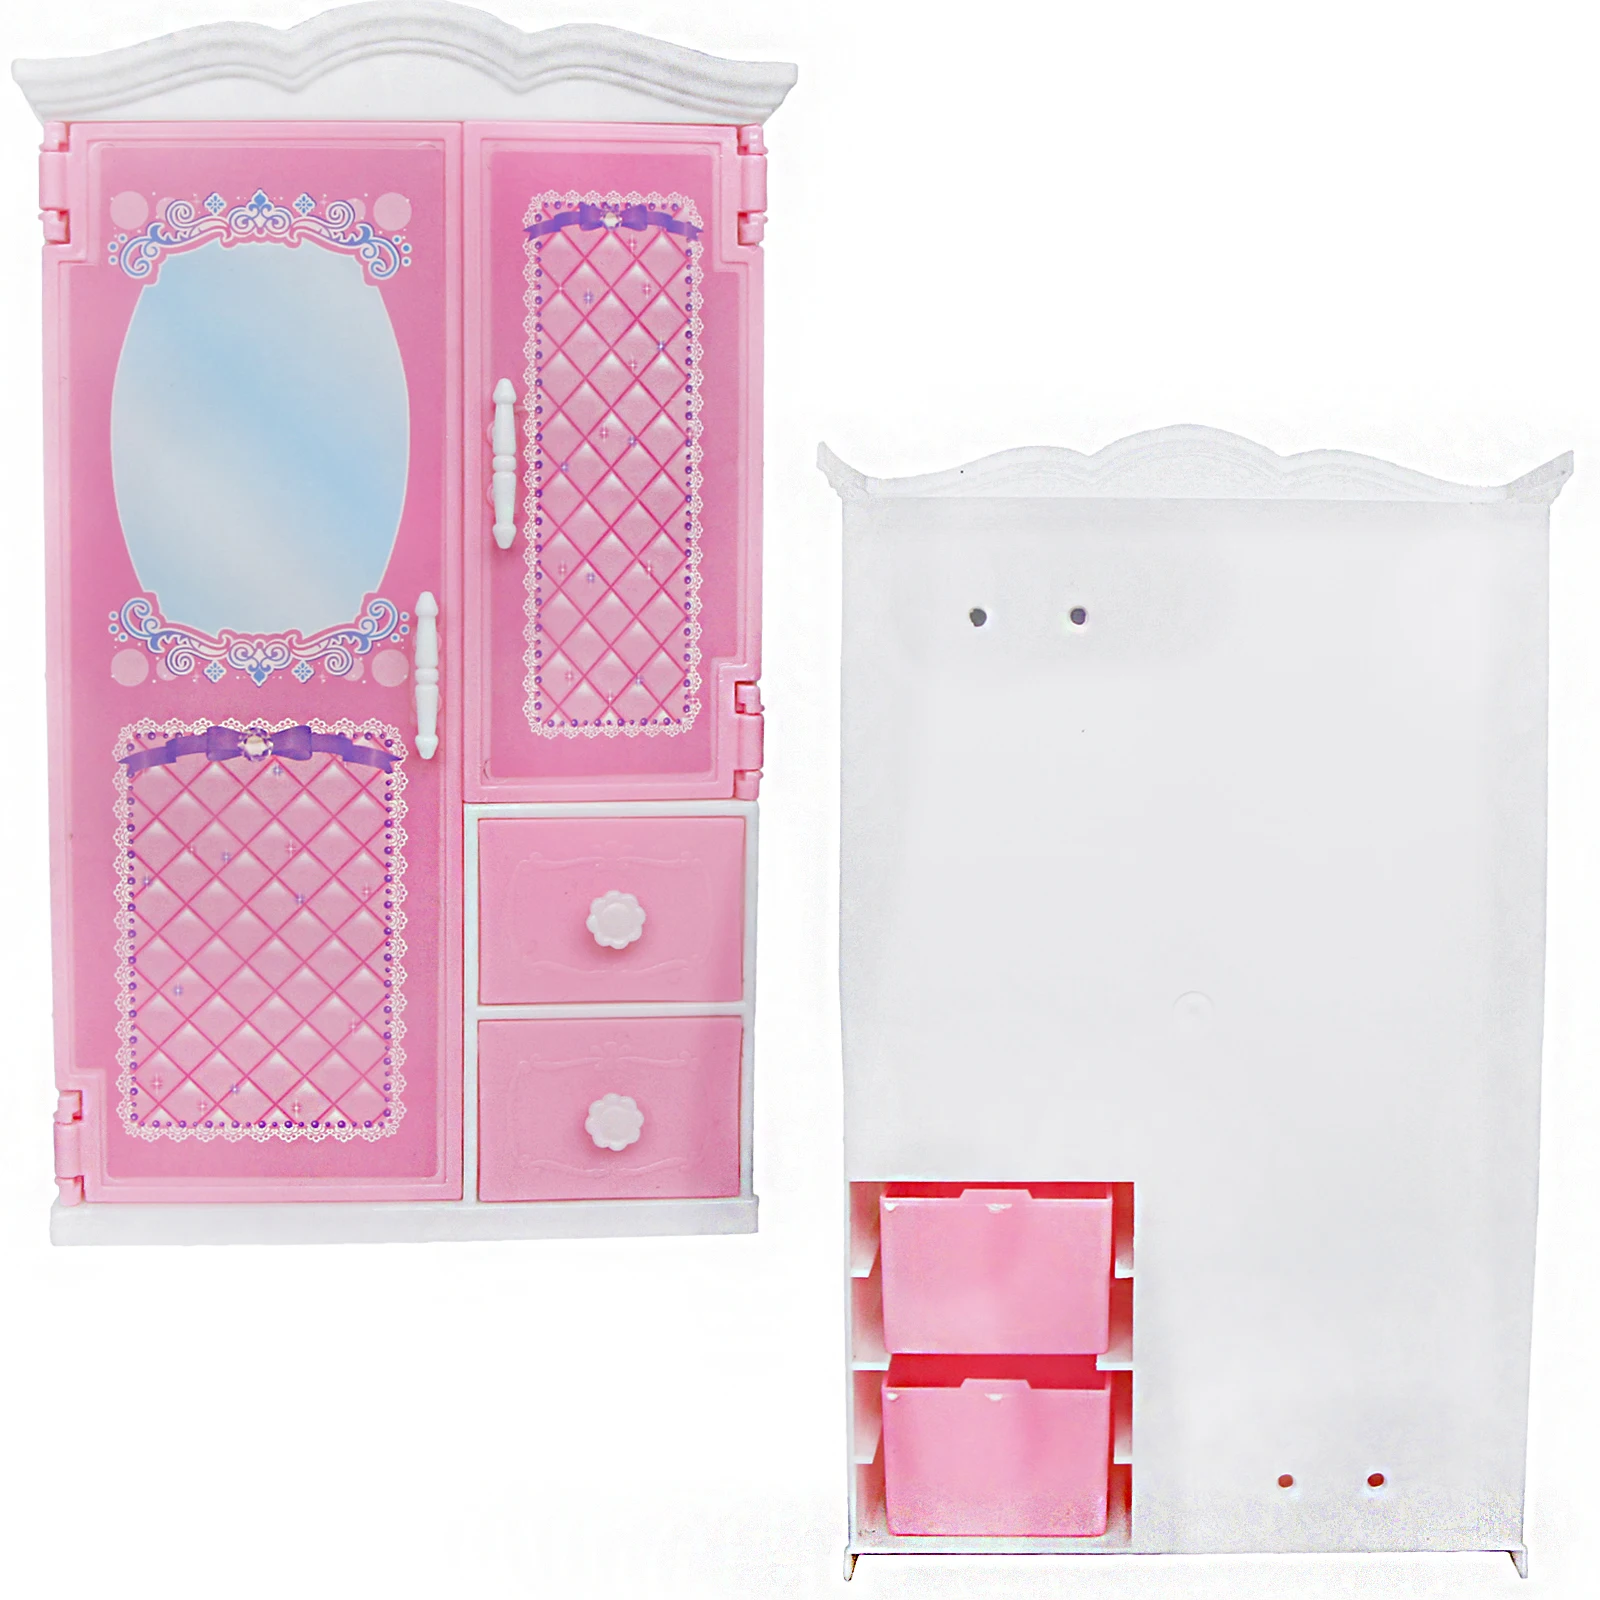 1х шкаф Garderobe Шкаф зеркало Принцесса Розовый кукольный домик одежда платье аксессуары мебель для куклы Барби/для Blythe